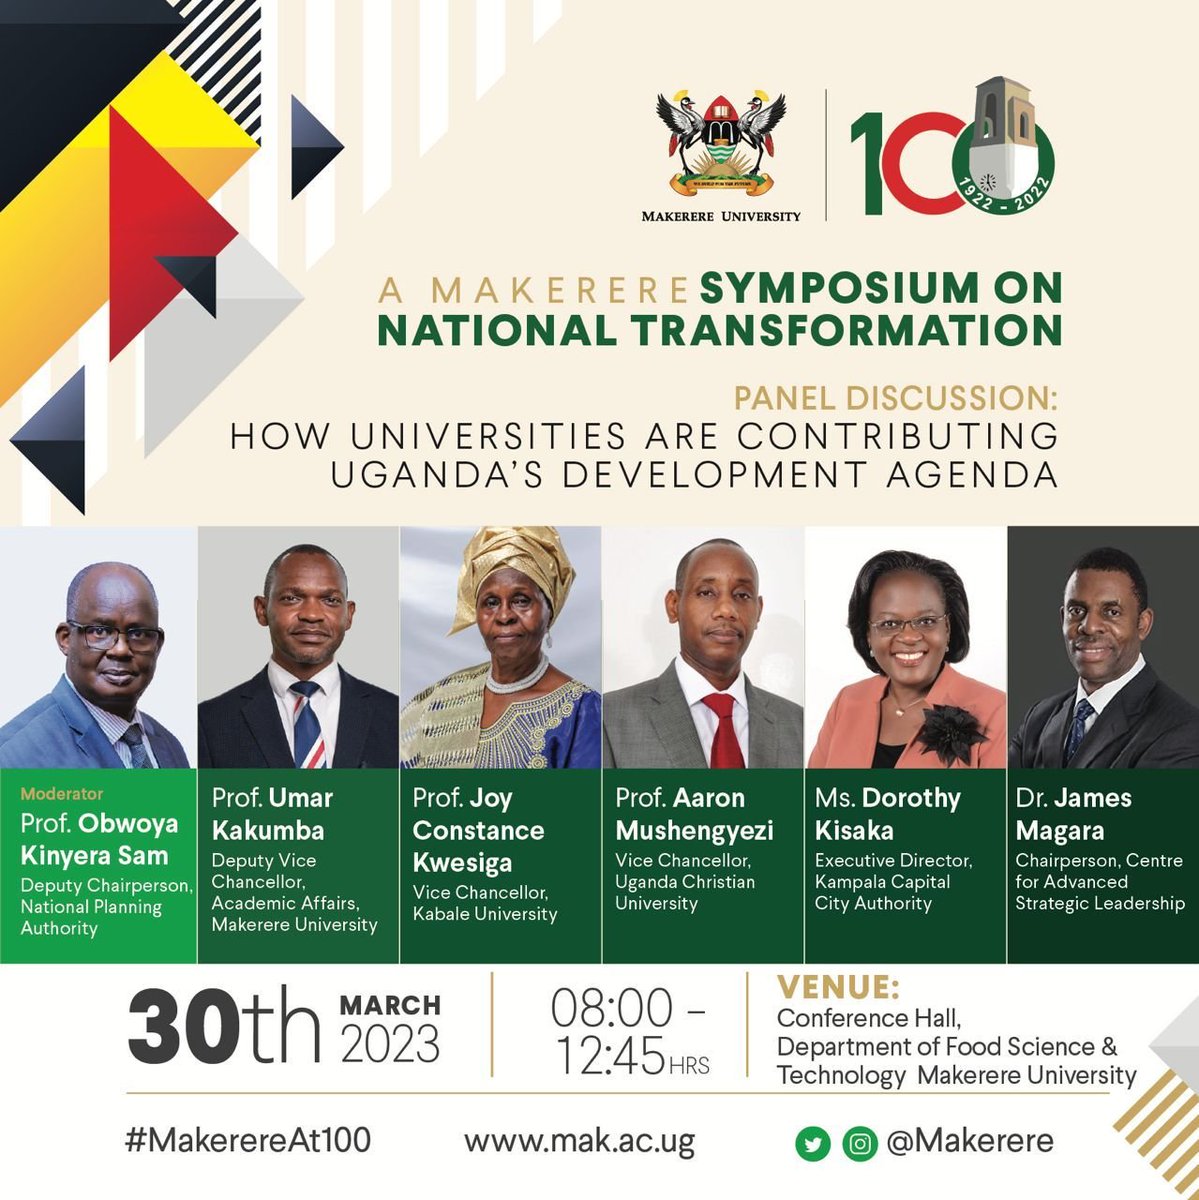 The symposium will be moderated by Prof. Obwoya Kinyera Sam with a panel of representatives from public Universities namely;
🔹Prof. @UmarKakumba 
🔹 Prof. Aaron Mushengyezi 
 🔹Prof. Joy Constance Kwesiga
 🔹Ms. @dorothykisaka 
 🔹@DrJamesMagara
#MakerereAt100
@Makerere